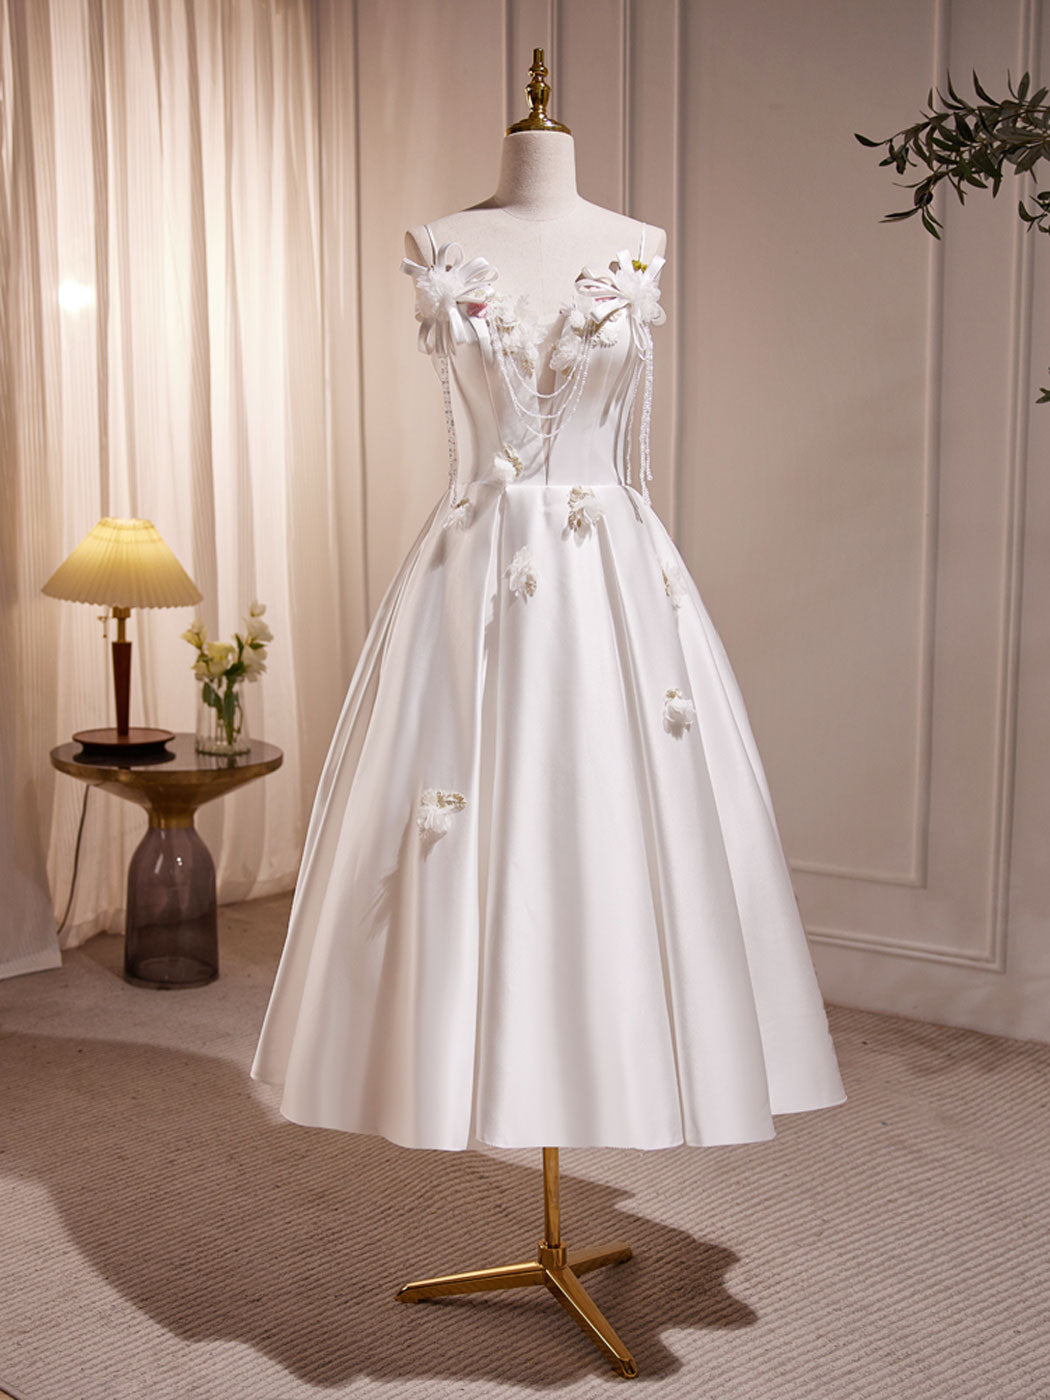 White V Neck Satin Tea Length Prom Dress Outfits For Girls, White Formal Dress Outfits For Women With Beading